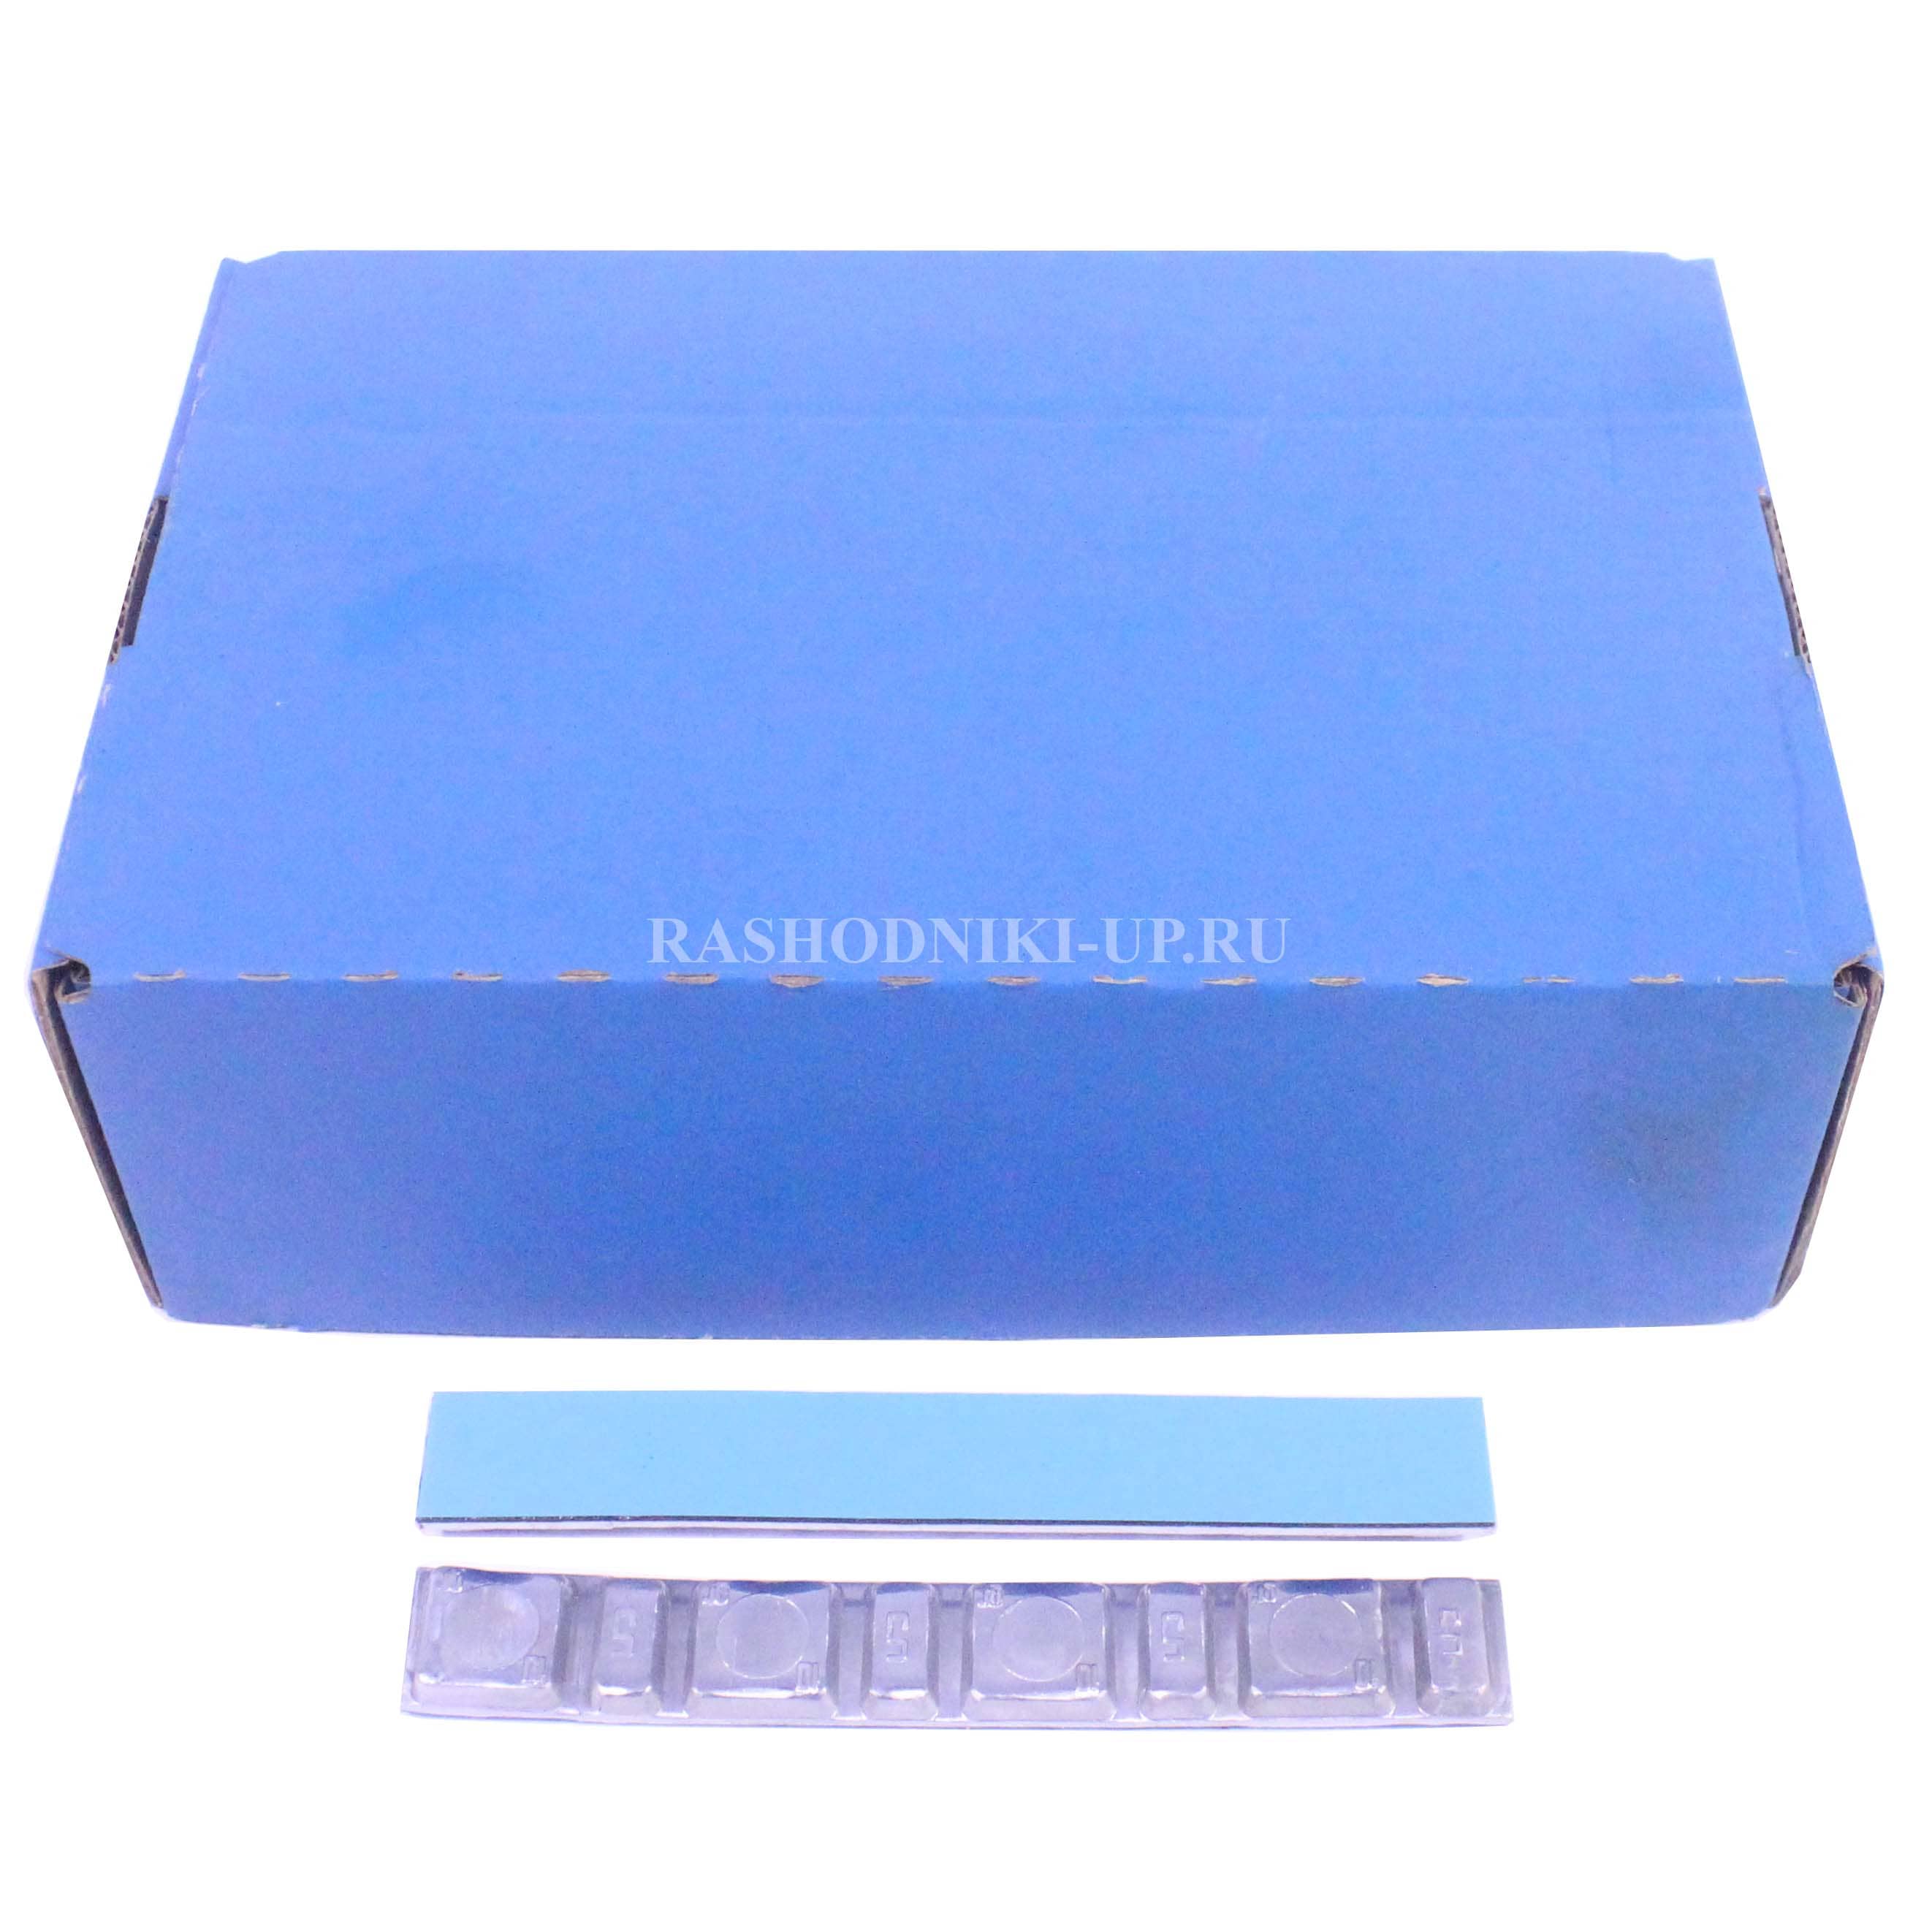 GZ 061 Тонкие синие штамповка стандарт(100шт)